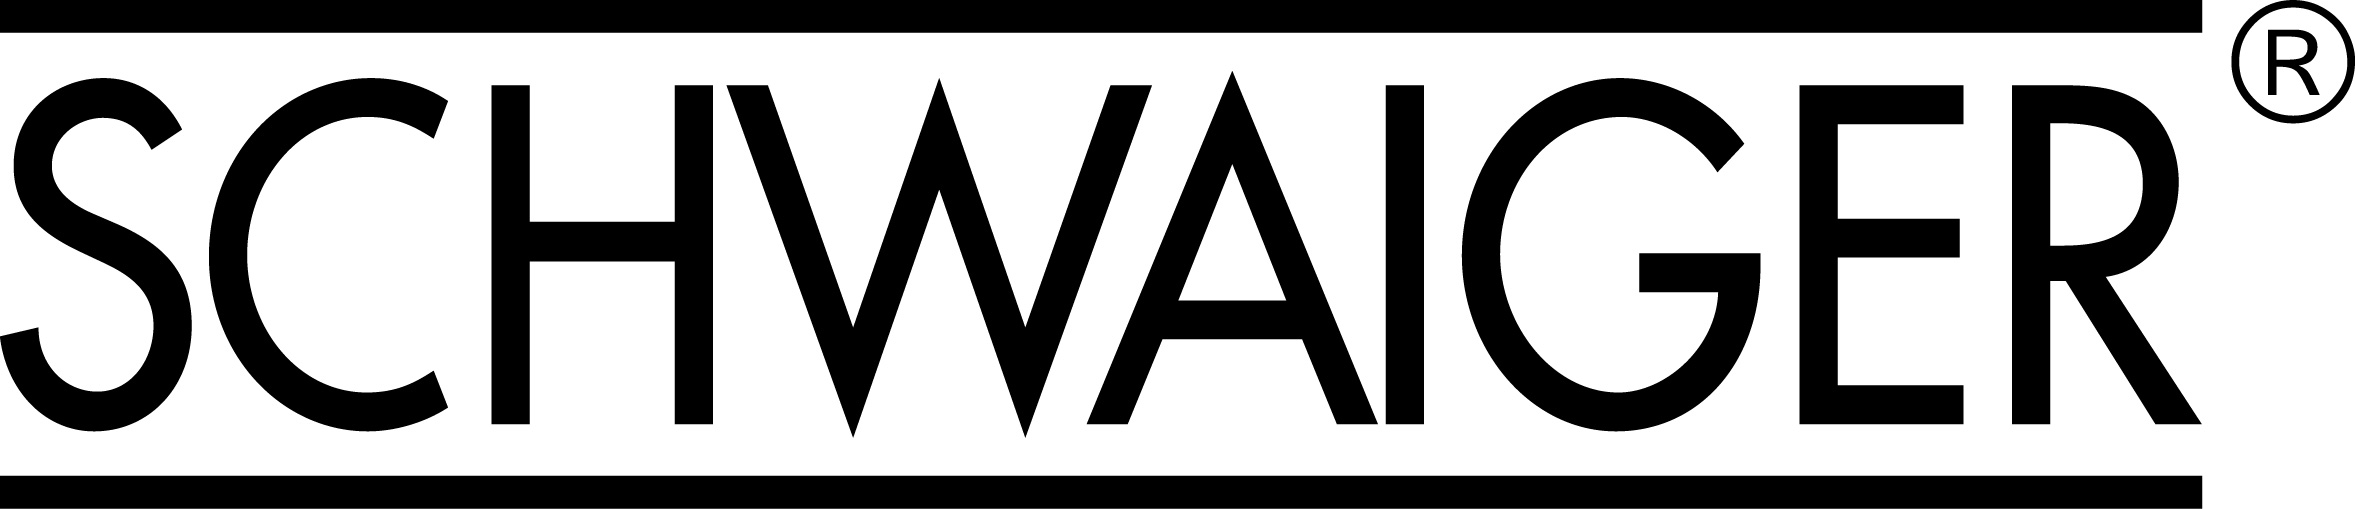 schwaiger logo